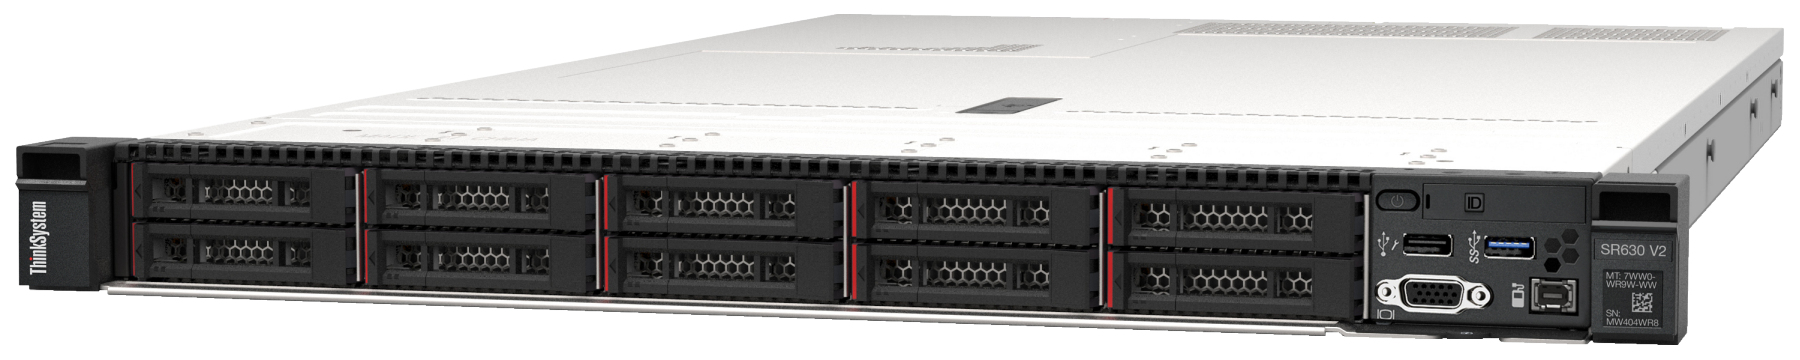 Сервер Lenovo ThinkSystem SR630 V2 (7Z71A057EA). Фиксированная комплектация сервера